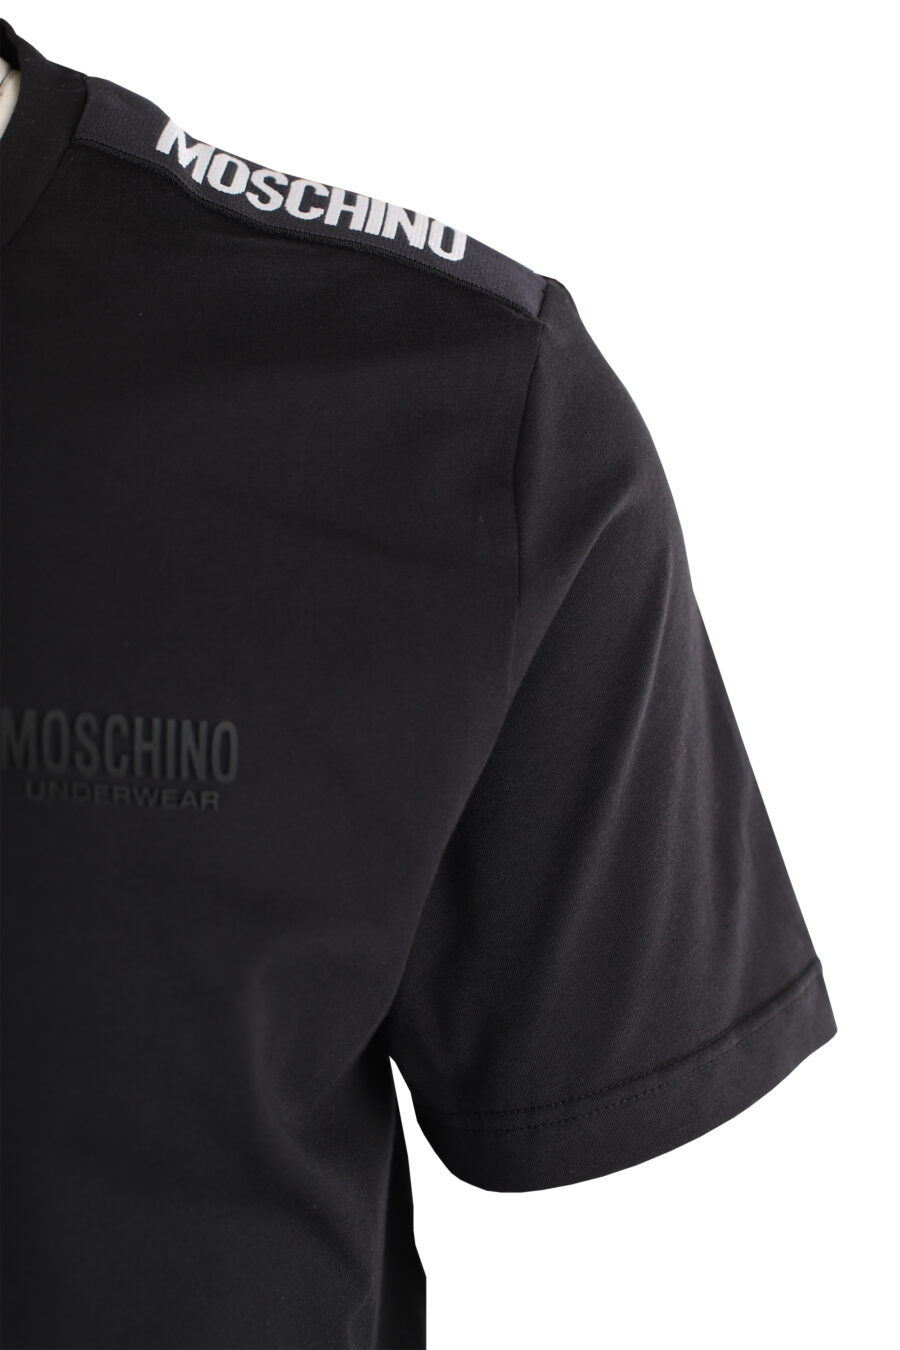 Pack de dos camisetas negras con logo en cinta en hombros - IMG 7330